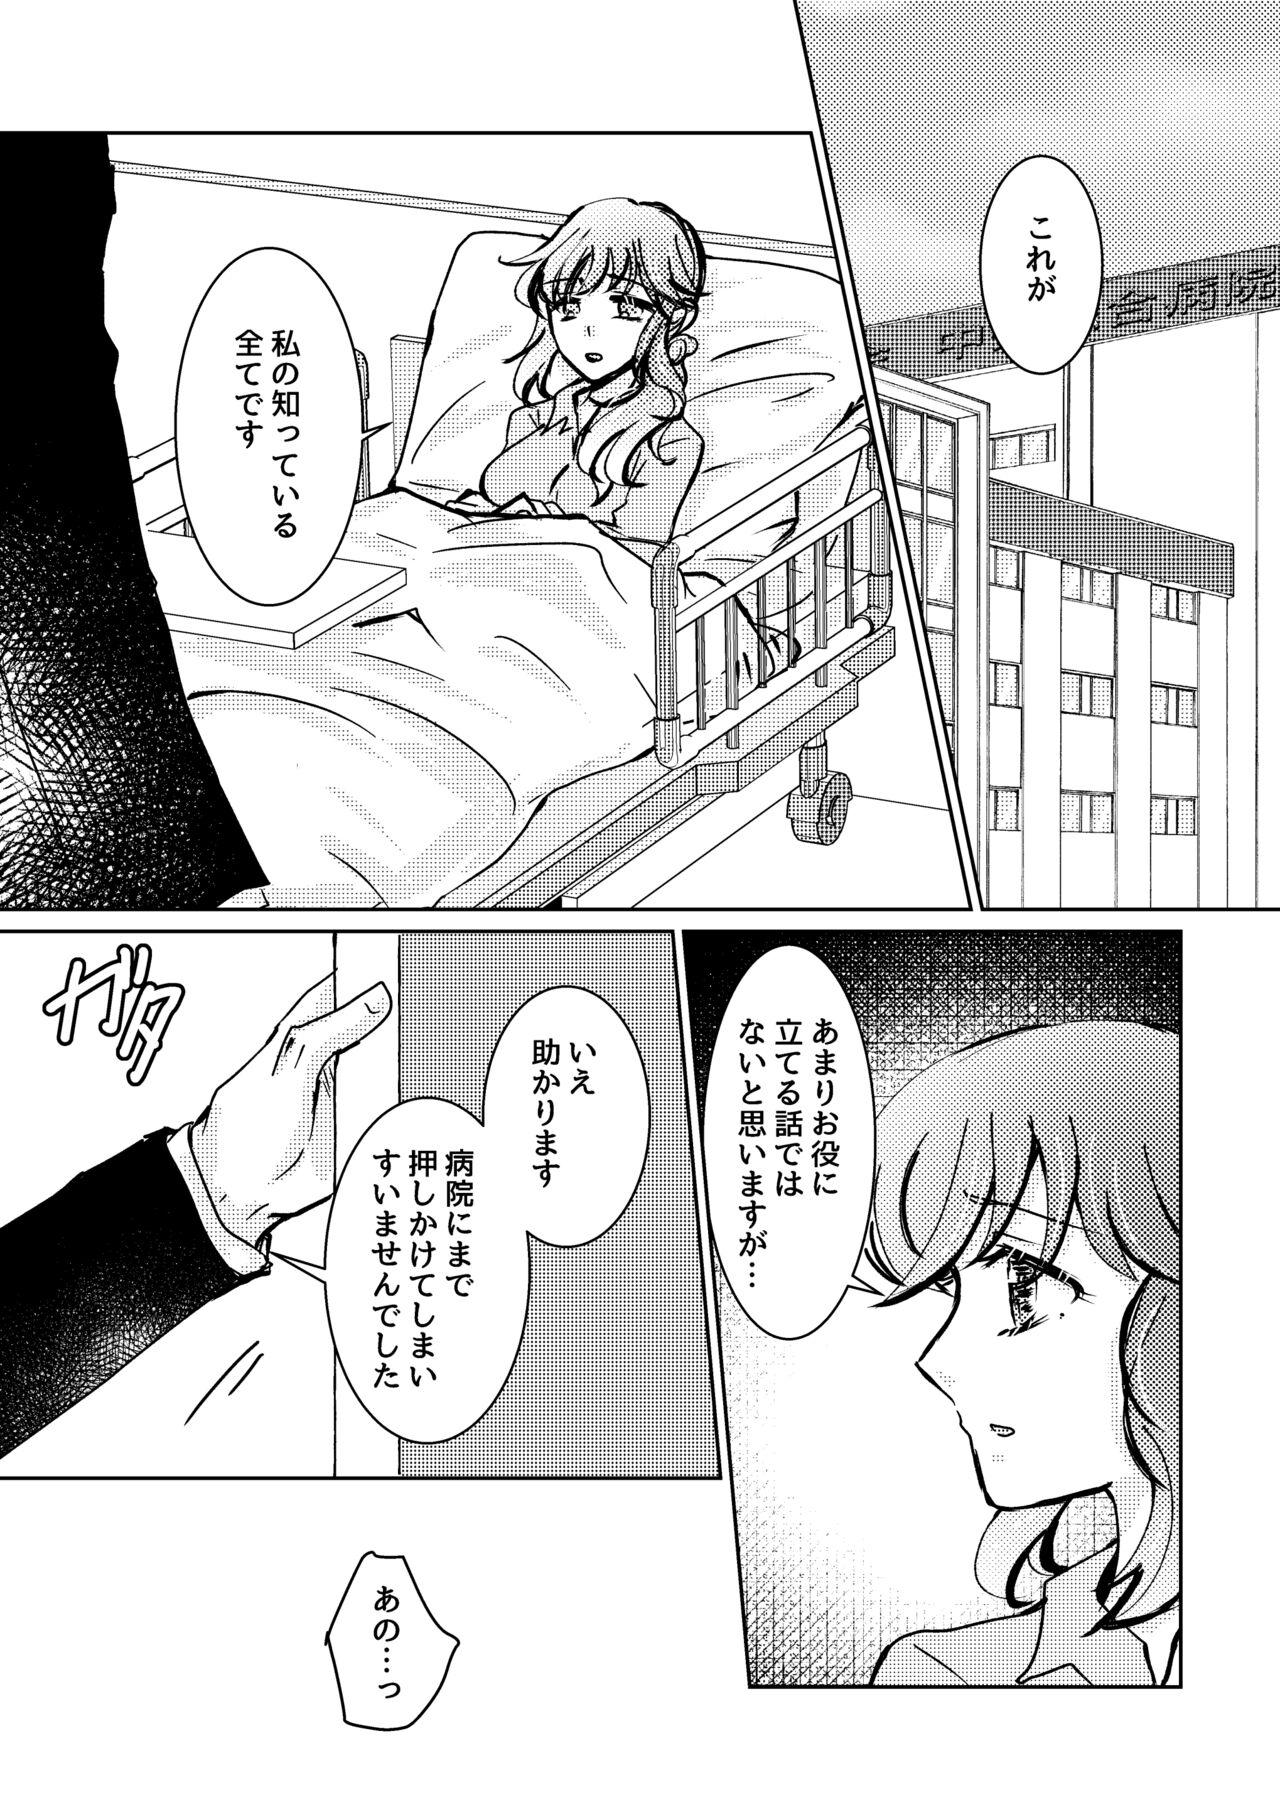 Amadora Kareya Yoru no Hanaka Episode 3 Hand Job - Page 2